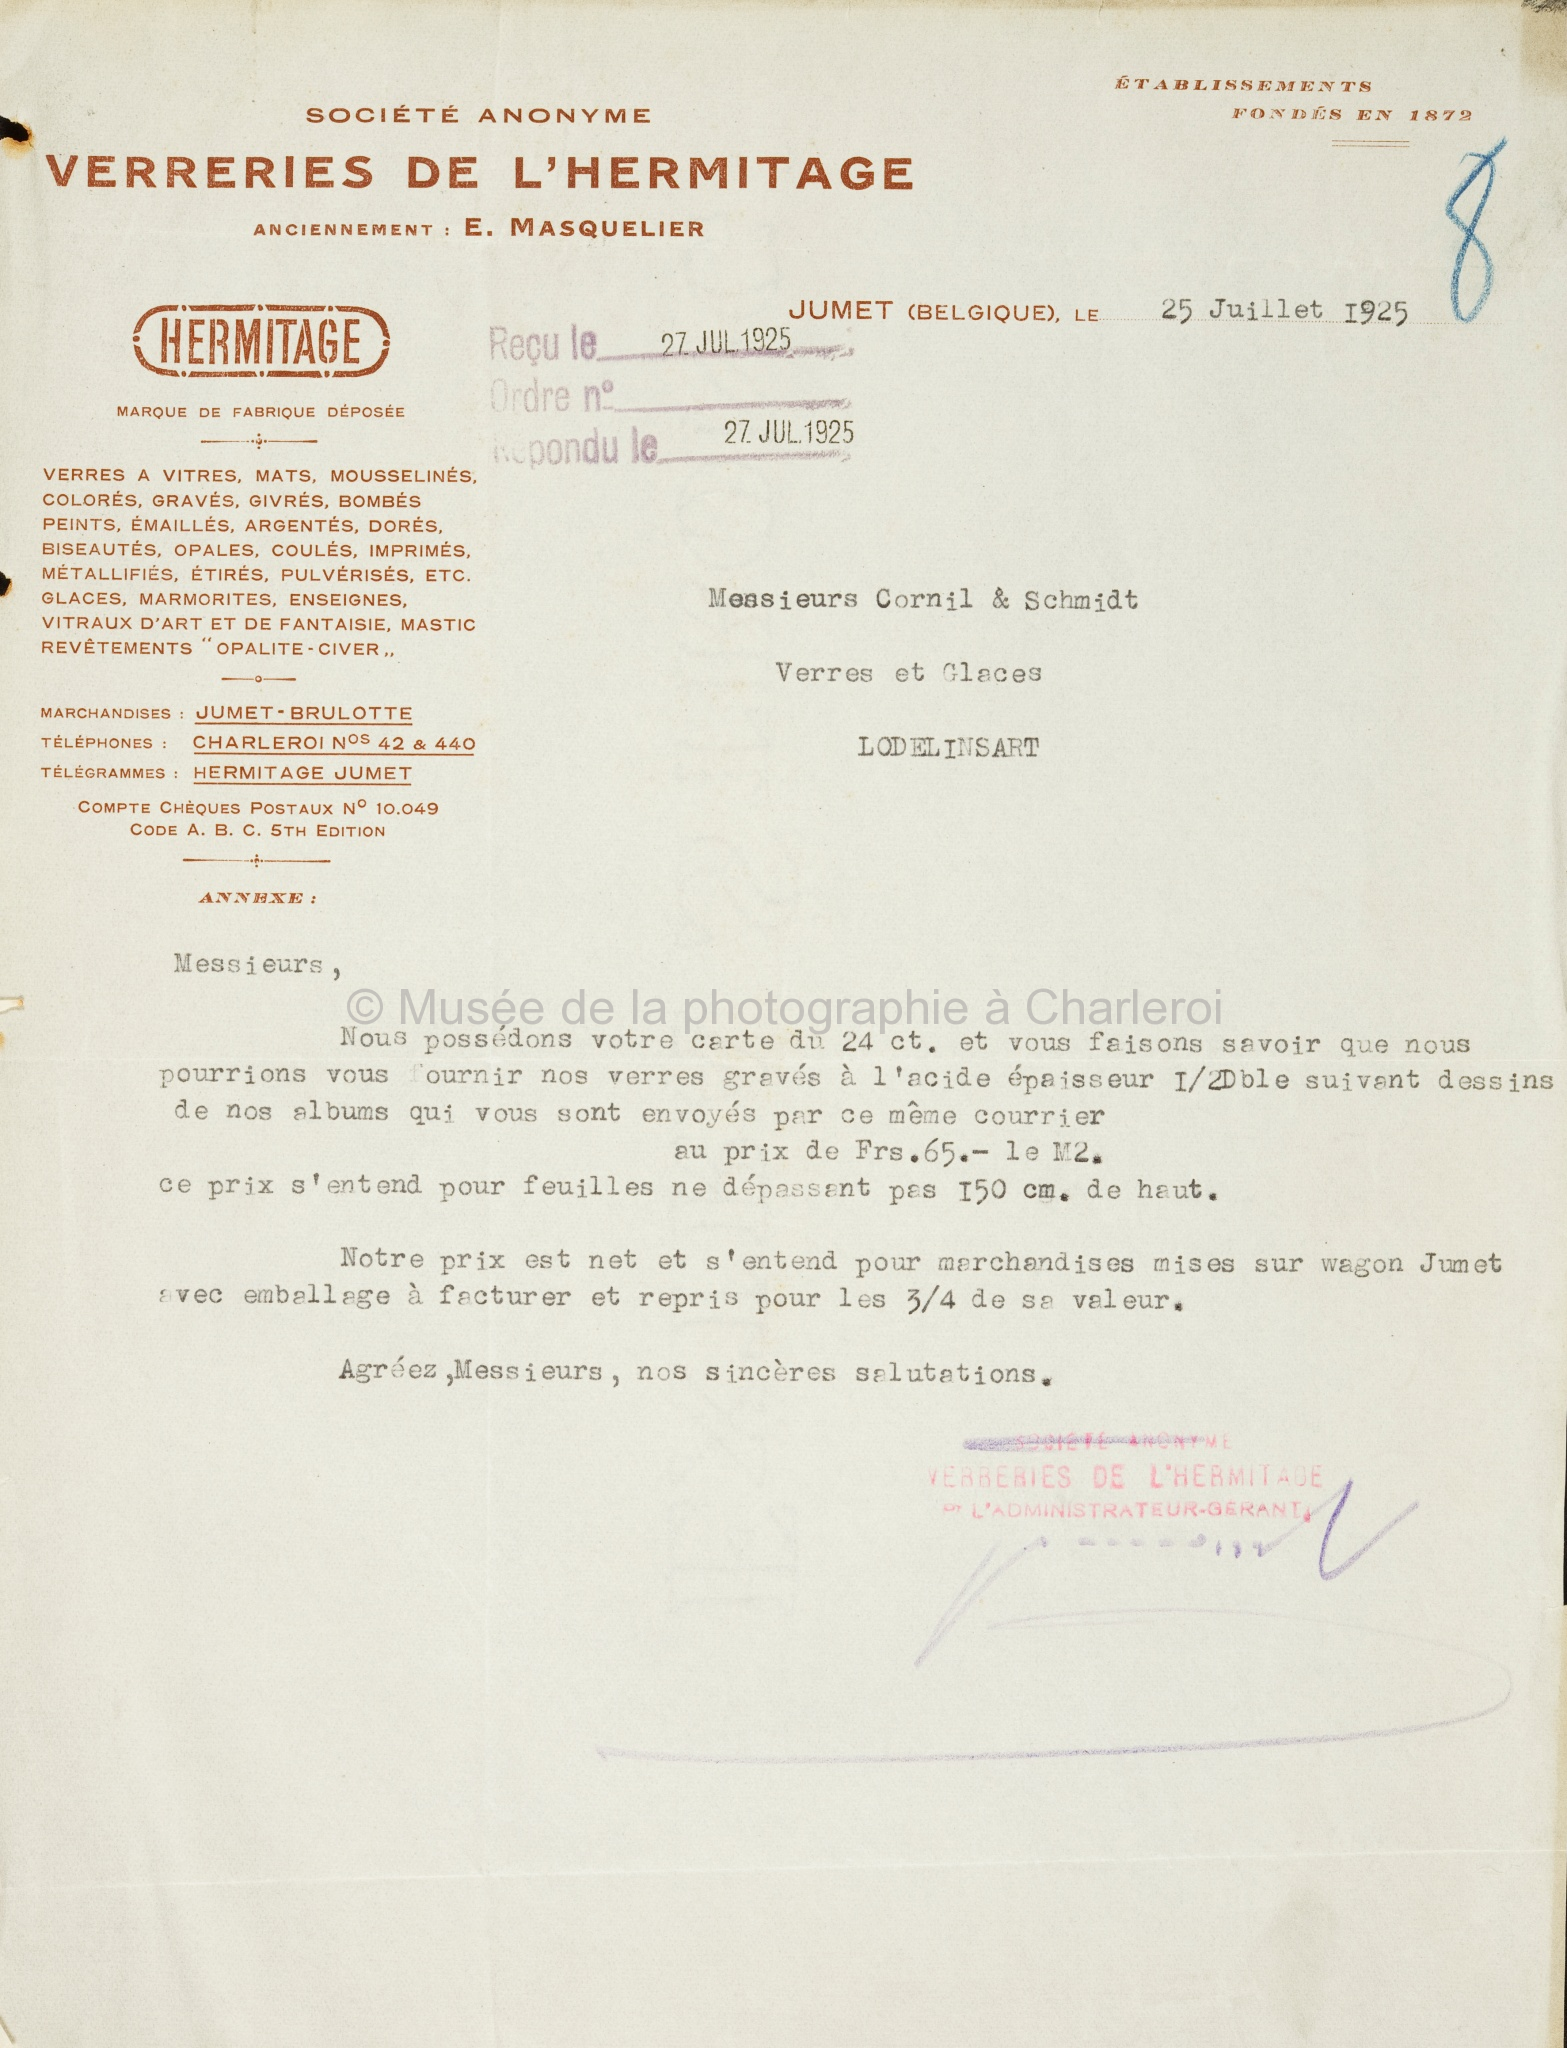 Remise de prix par lettre des verreries de l'hermitage; à M. Cornil & Schmidt